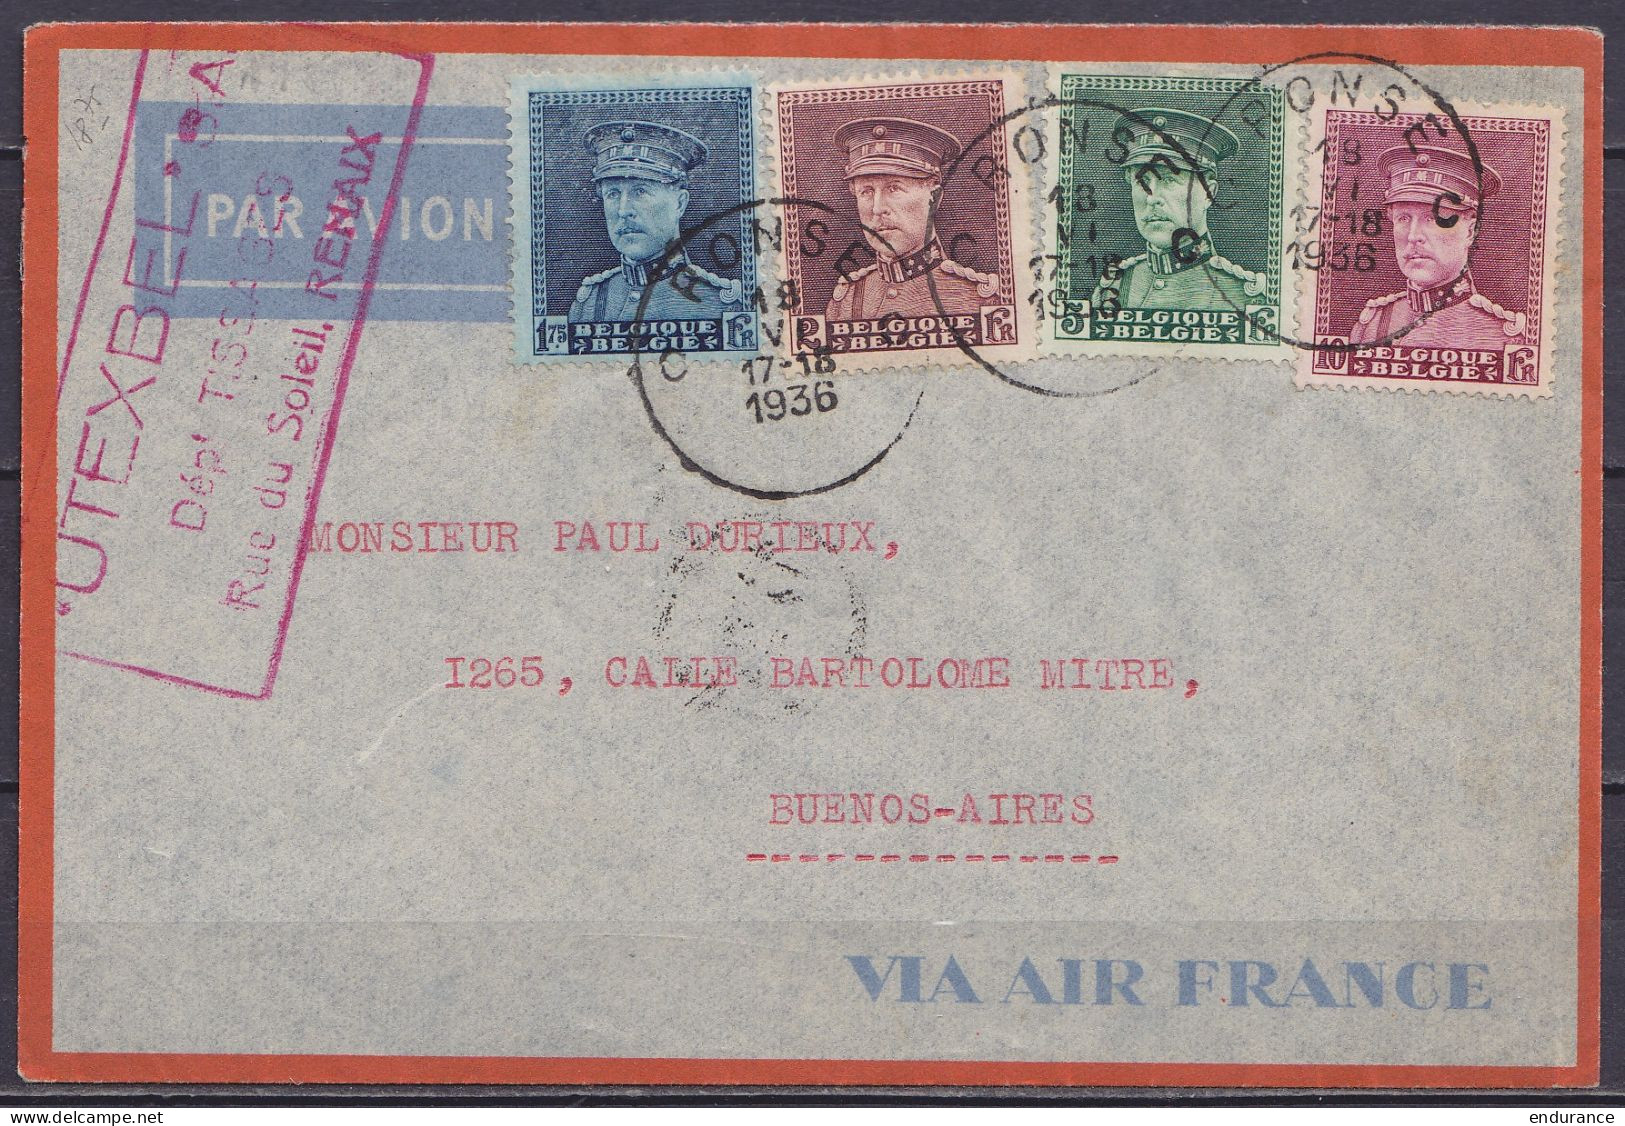 L. Par Avion Affr. N°320+321+323+324 Càd RONSE C /18 VI 1936 Pour BUENOS AIRES Argentine / Enveloppe "VIA AIR France" (a - 1931-1934 Chepi